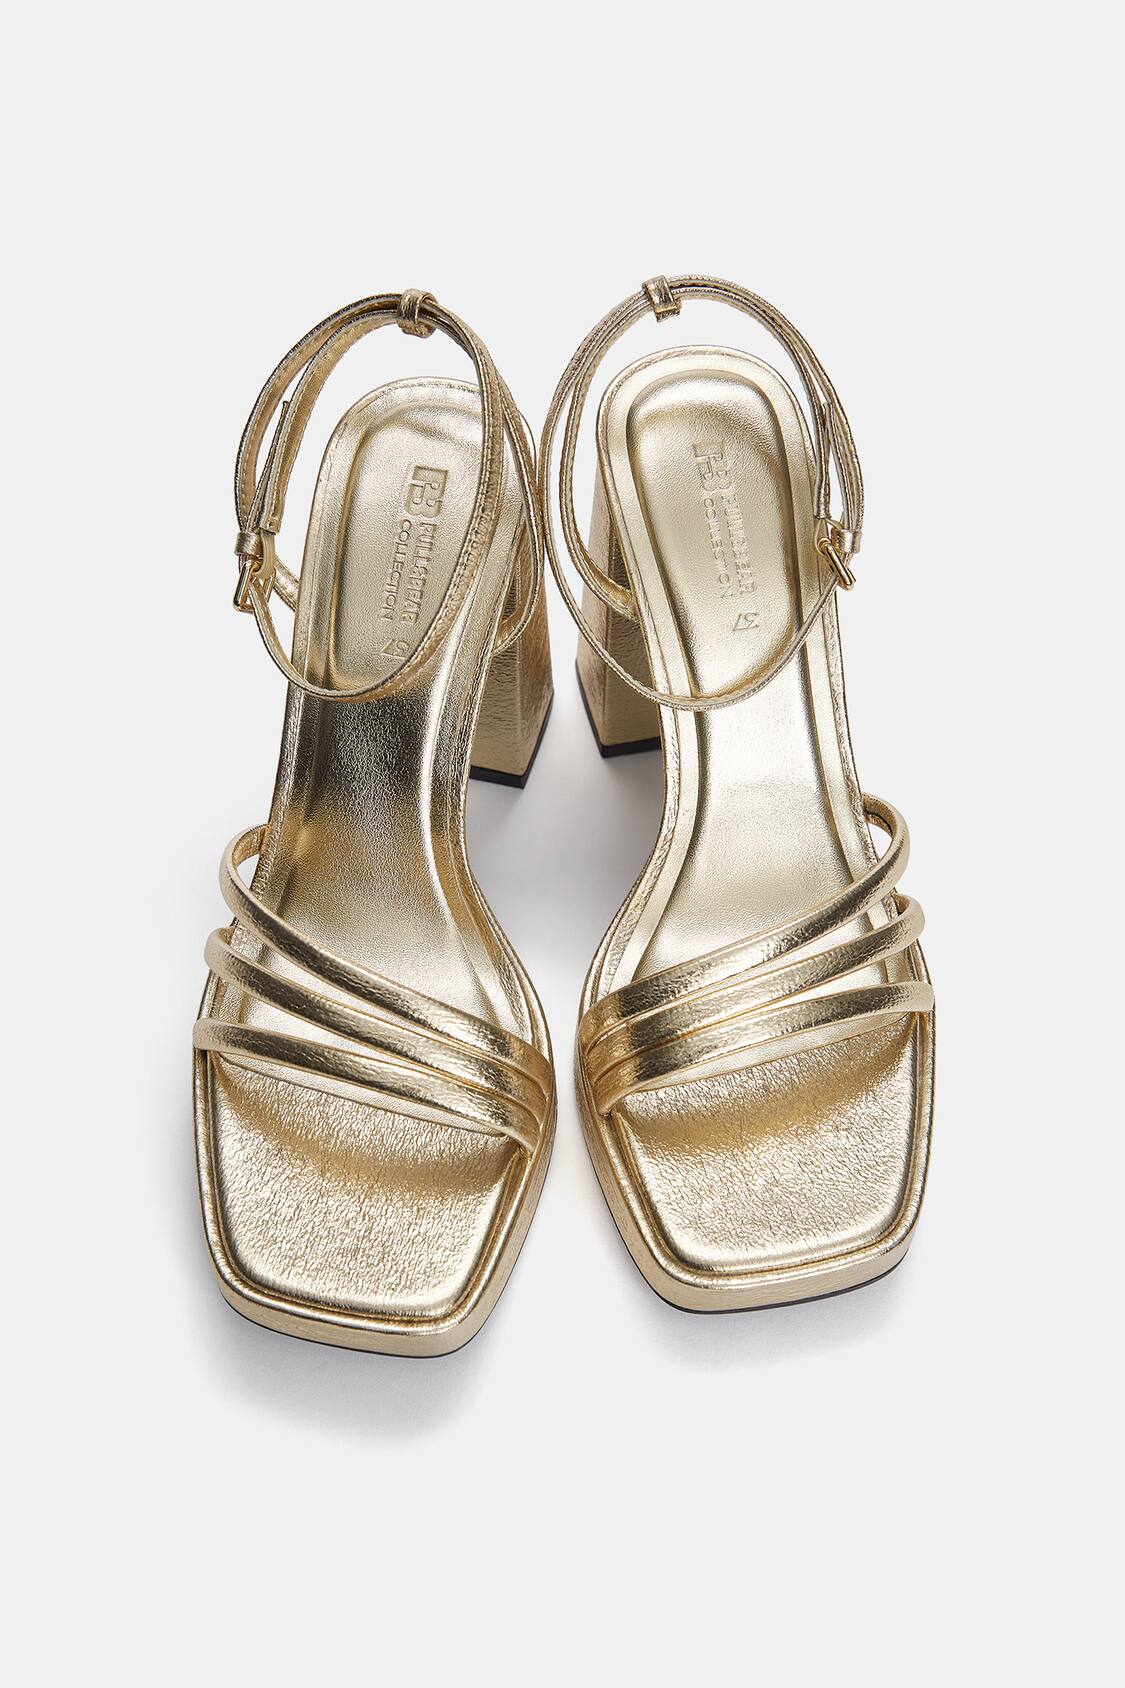 Glam Block Heel Sandals In Wide Width In Tumbled Metallic Suede